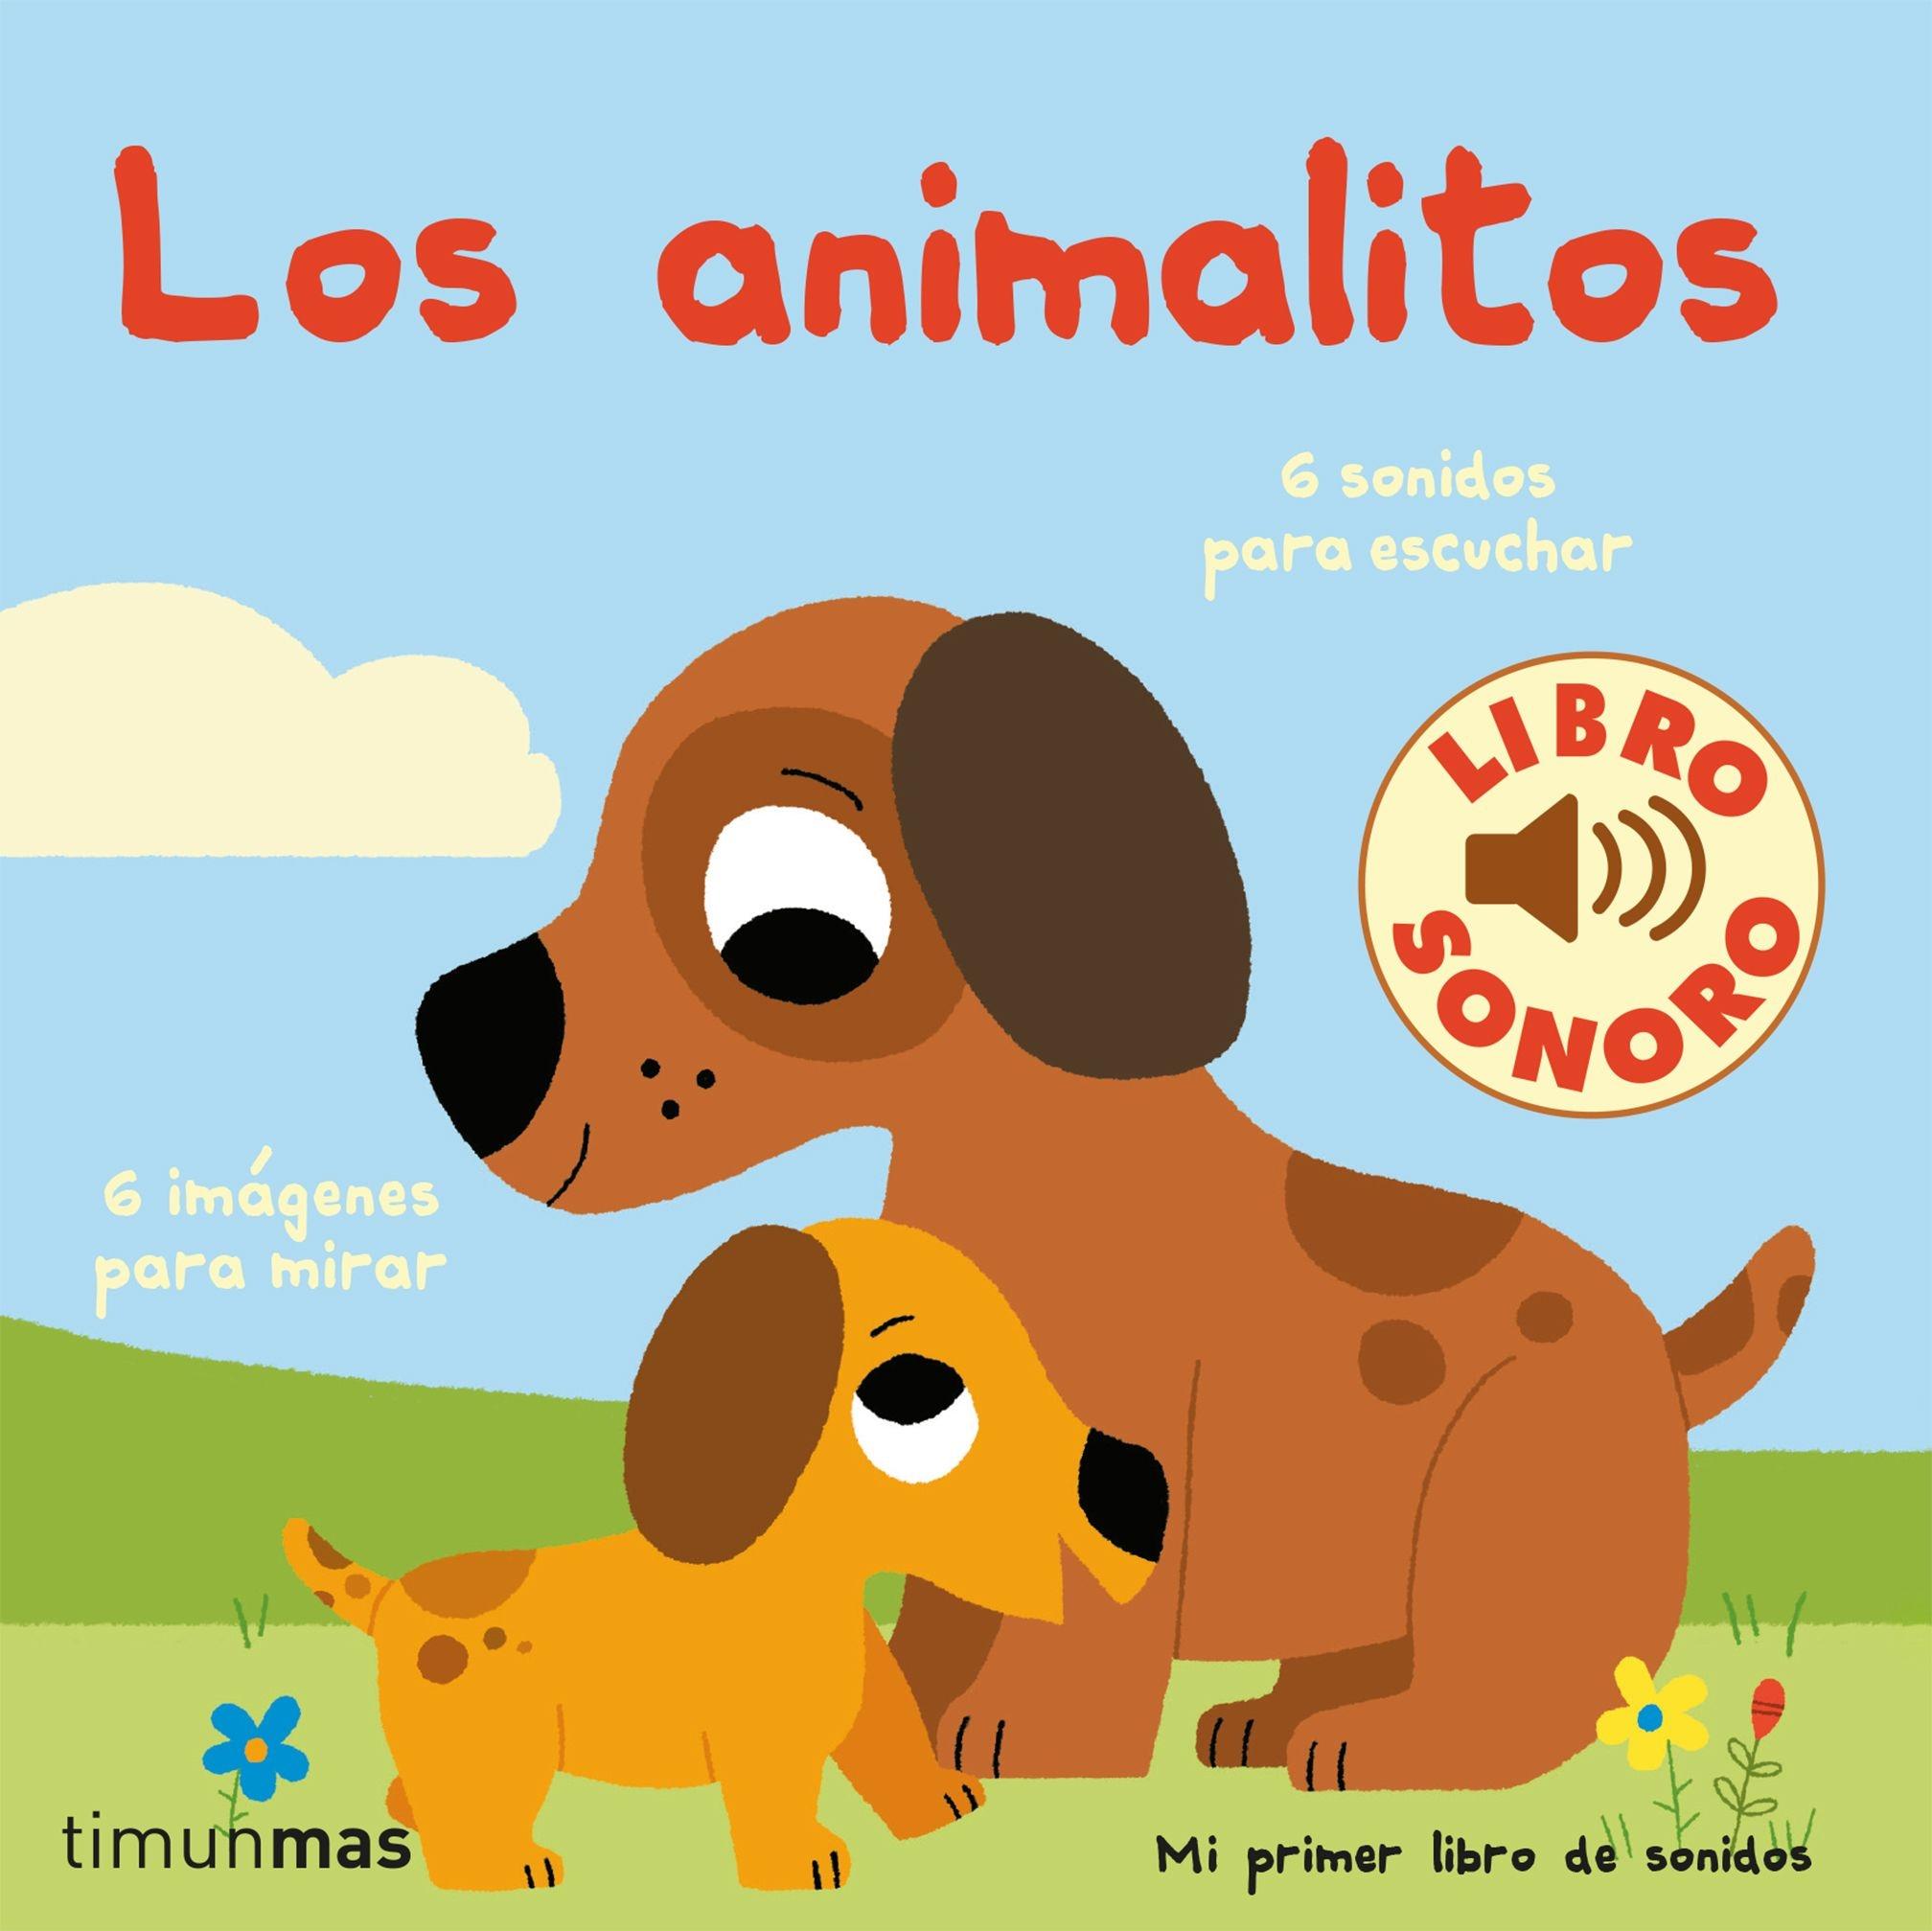 Animalitos, Los "Mi primer libro de sonidos. 6 sonidos para escuchar"